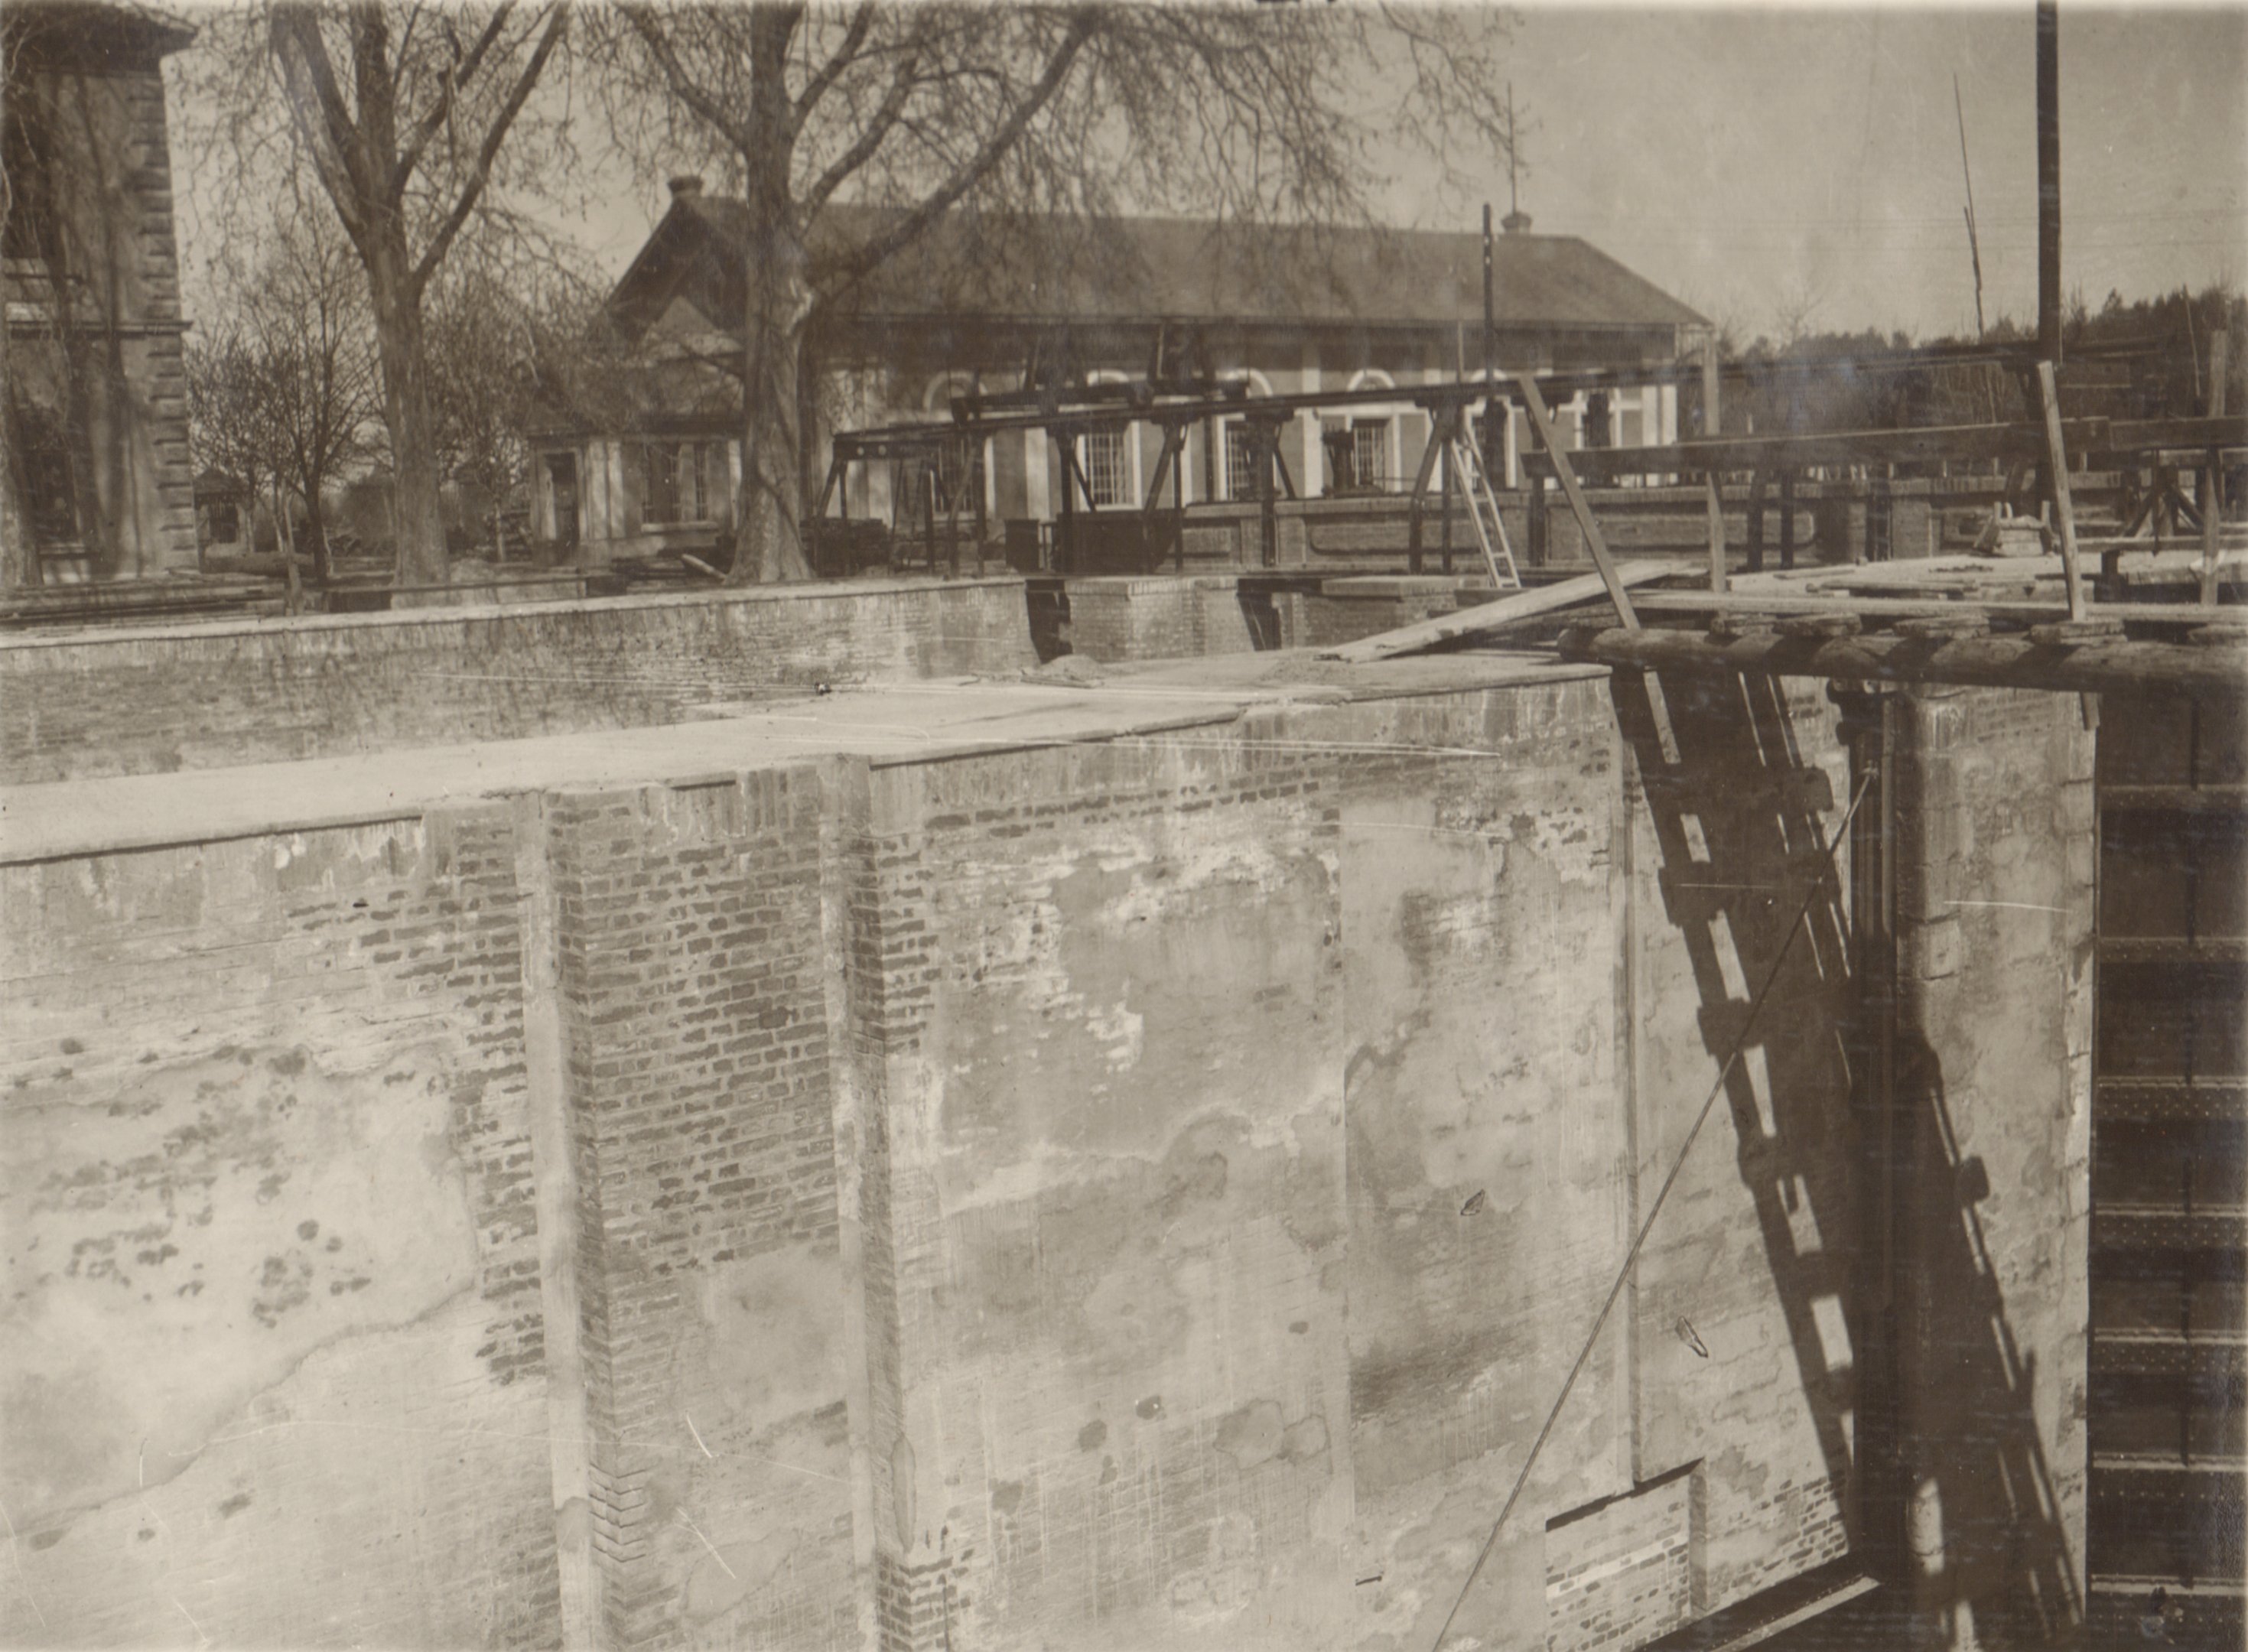 A hajózózsilip jobboldali falának javítása. A felső kapu alatti falrész javítás után, 1932. április 29. (Magyar Környezetvédelmi és Vízügyi Múzeum - Duna Múzeum CC BY-NC-SA)